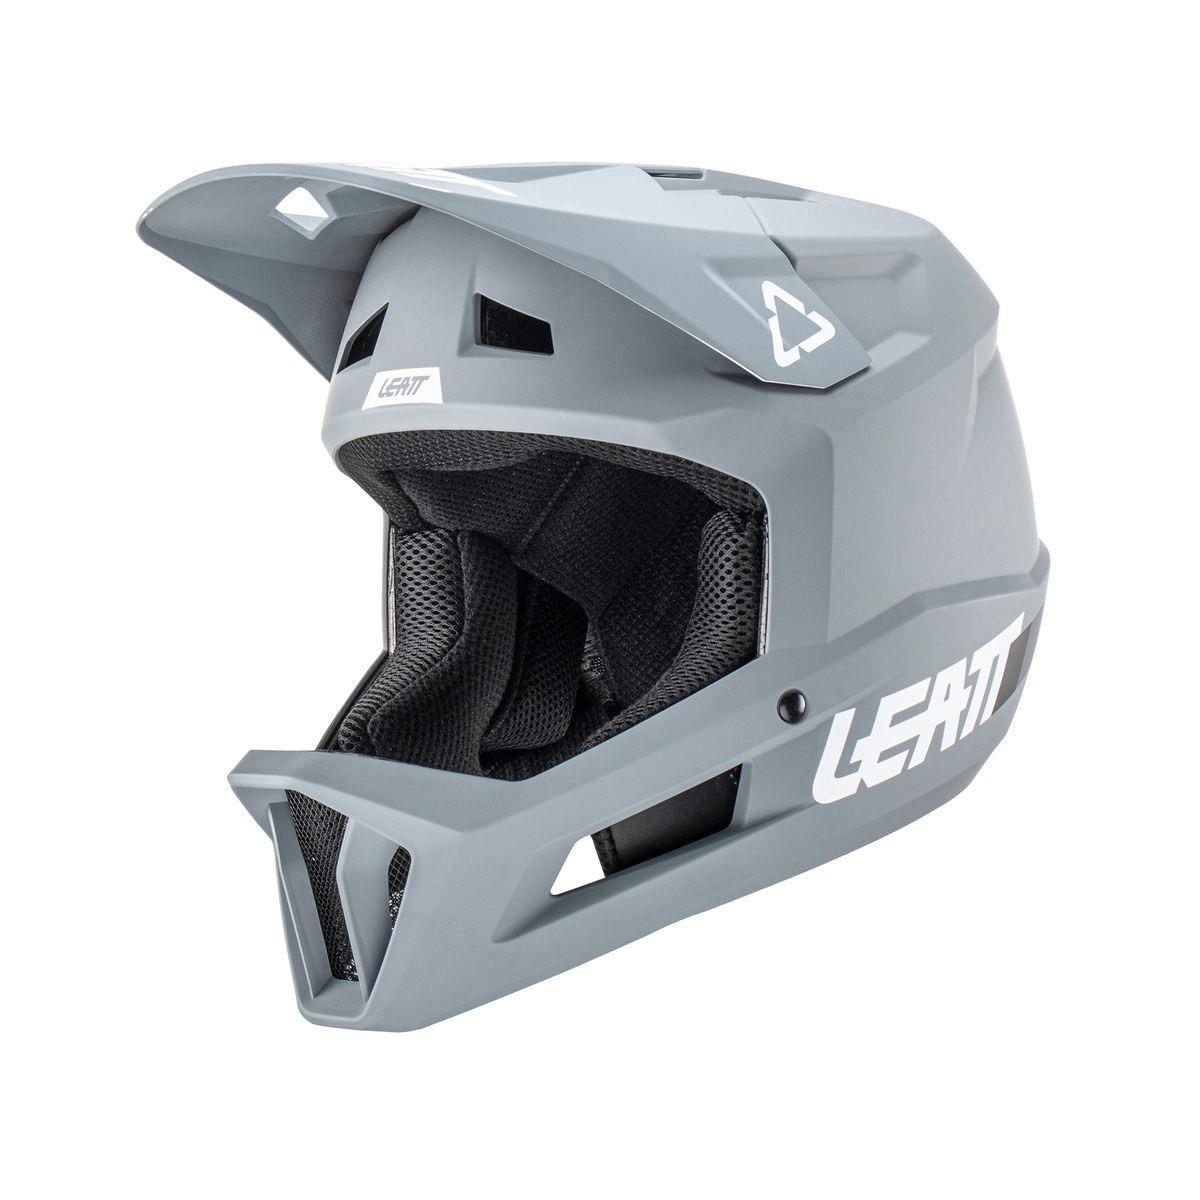 Gravity 1.0 MTB Fullface Helmet Grey Size XS (53-54cm)